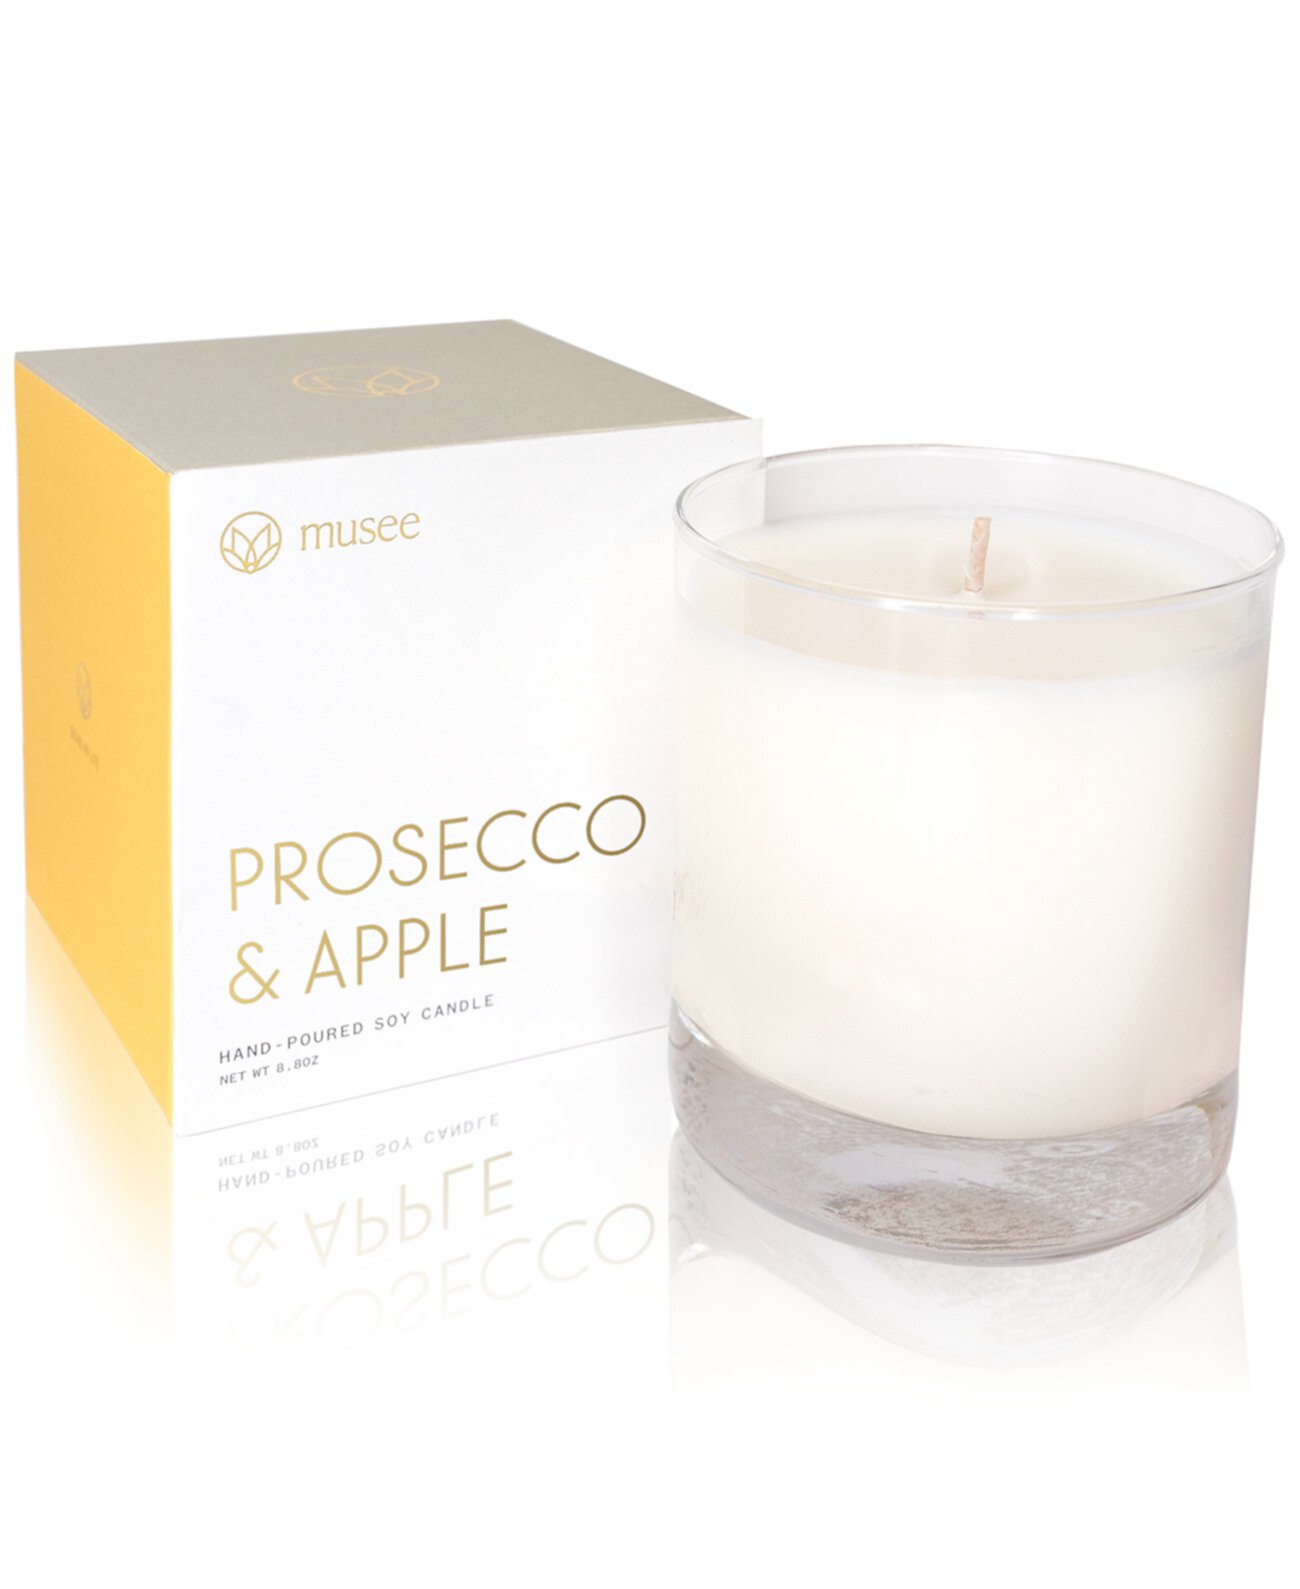 Соевая свеча Prosecco & Apple, отлитая вручную, 8,8 унции. Musee